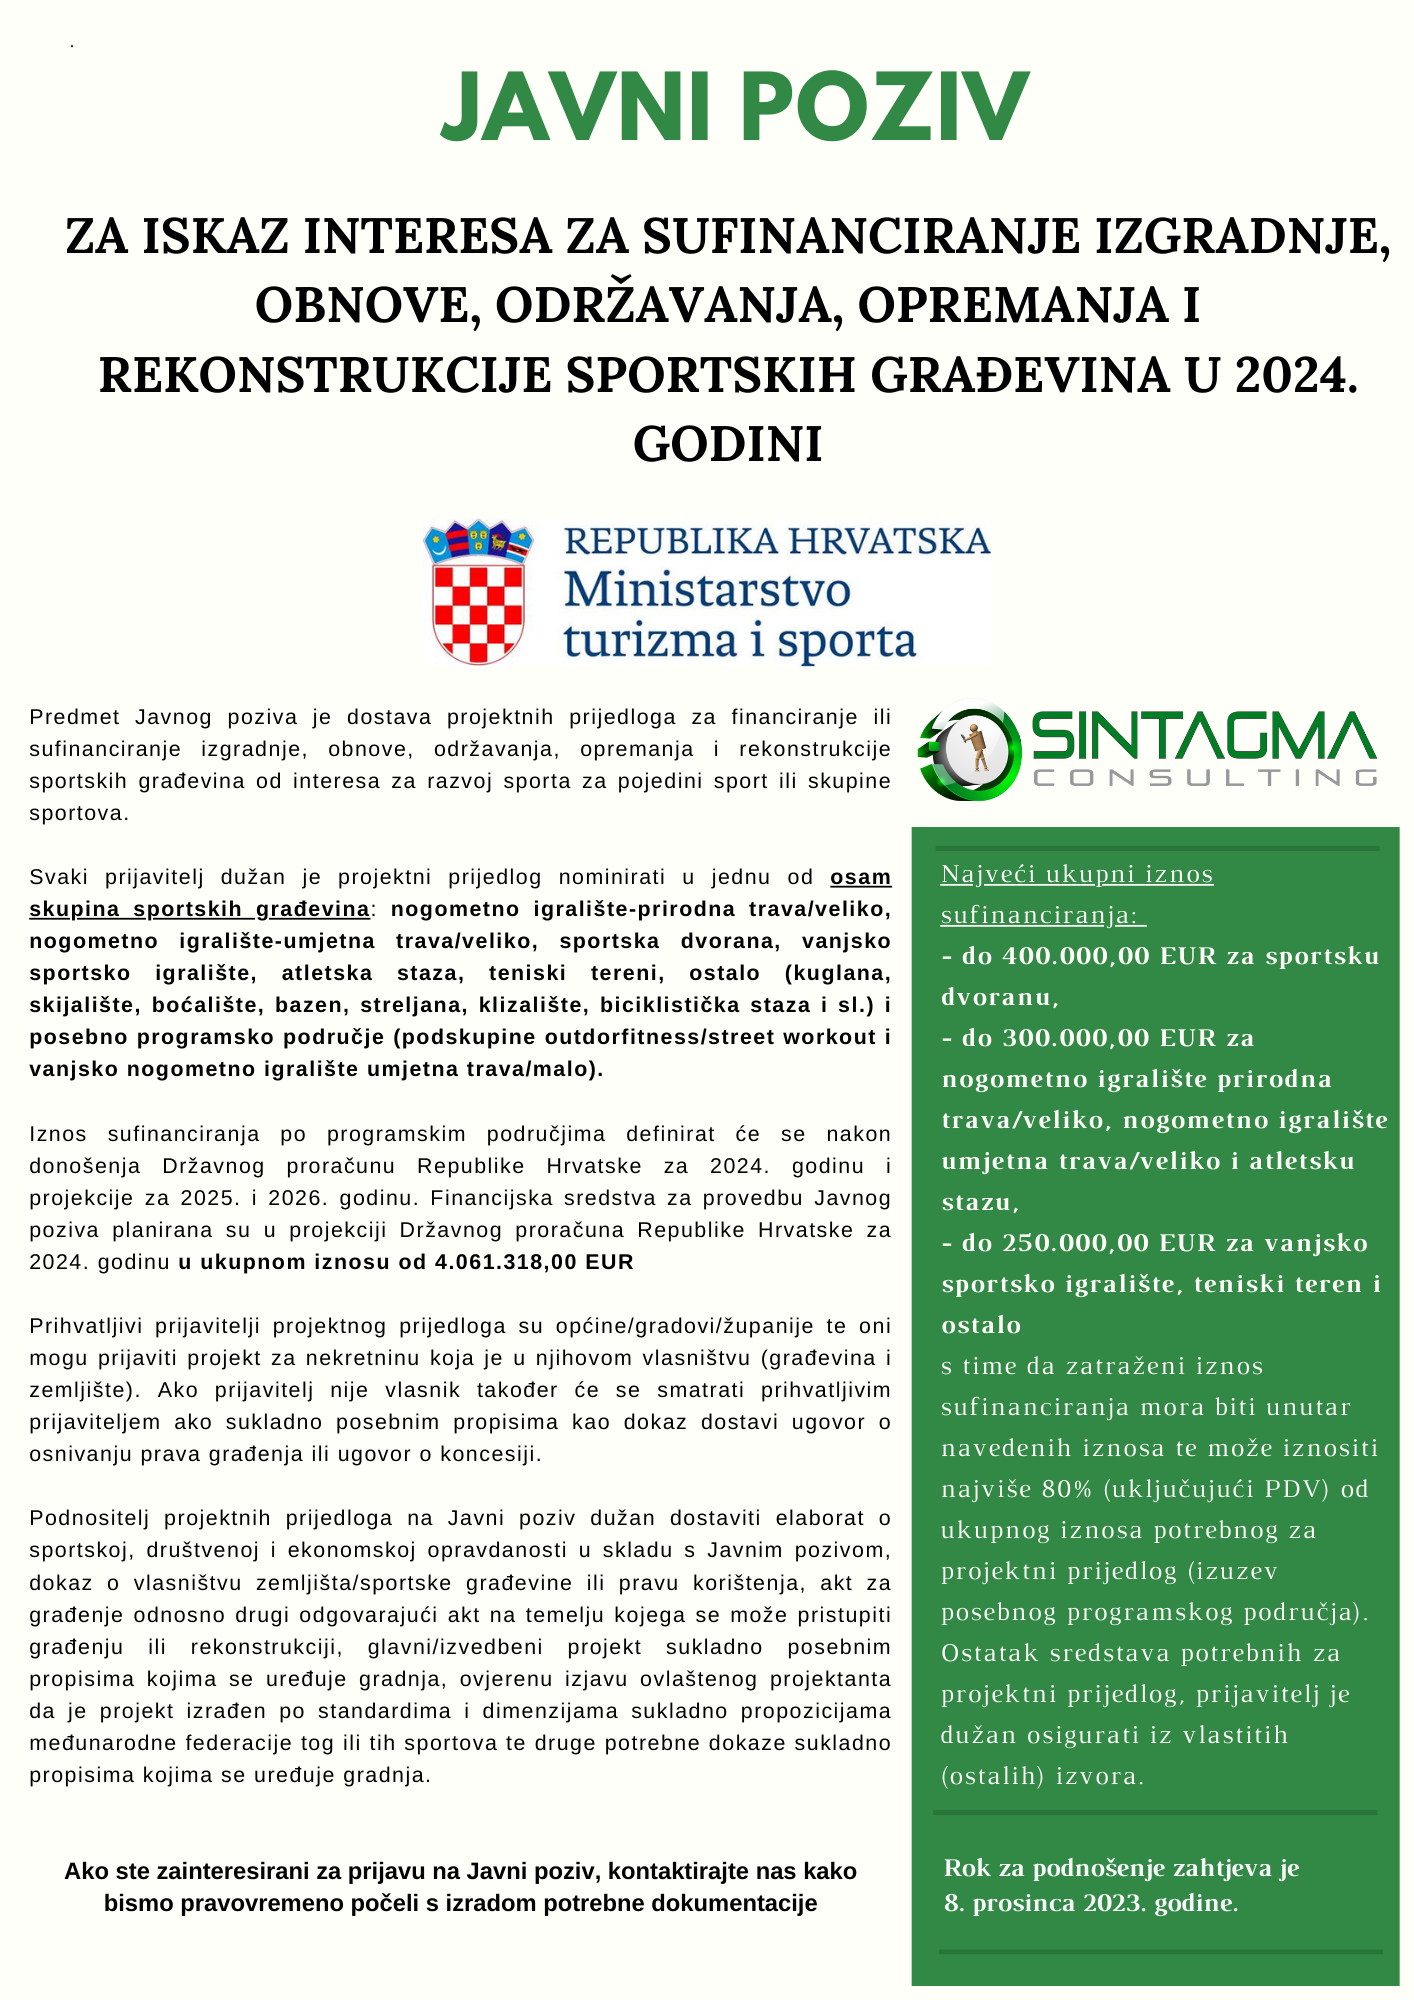 Javni poziv za iskazivanje interesa za sufinanciranje izgradnje obnove održavanja opremanja i rekonstrukcije sportskih građevina u 2024